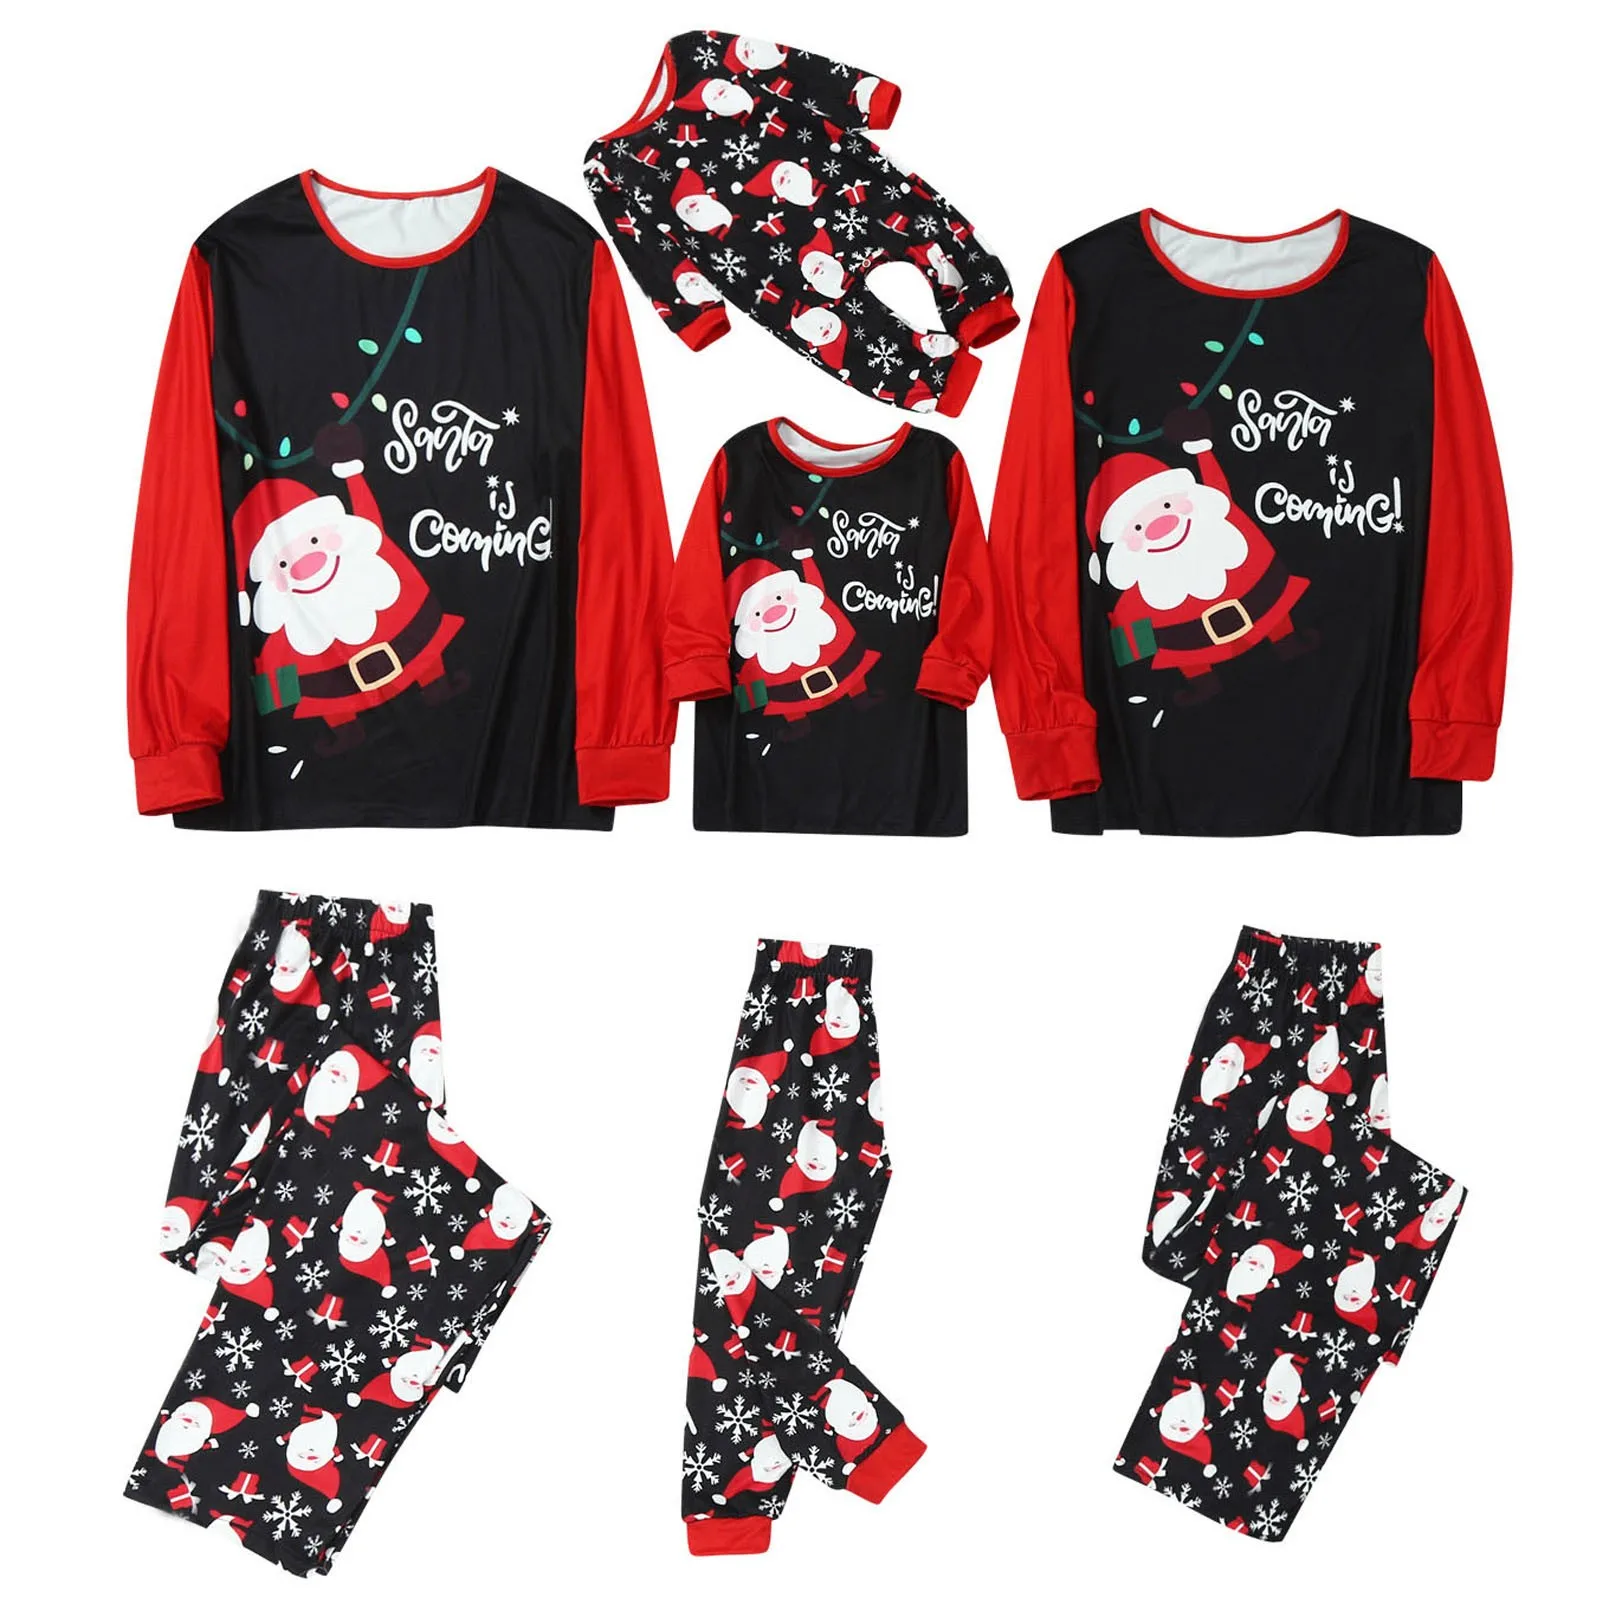 

Christmas Santa Claus Prints Family Matching Outfits Xmas Comfy Pajamas Set Clothes Matching Long Sleeve Tops+pants Set Navidad